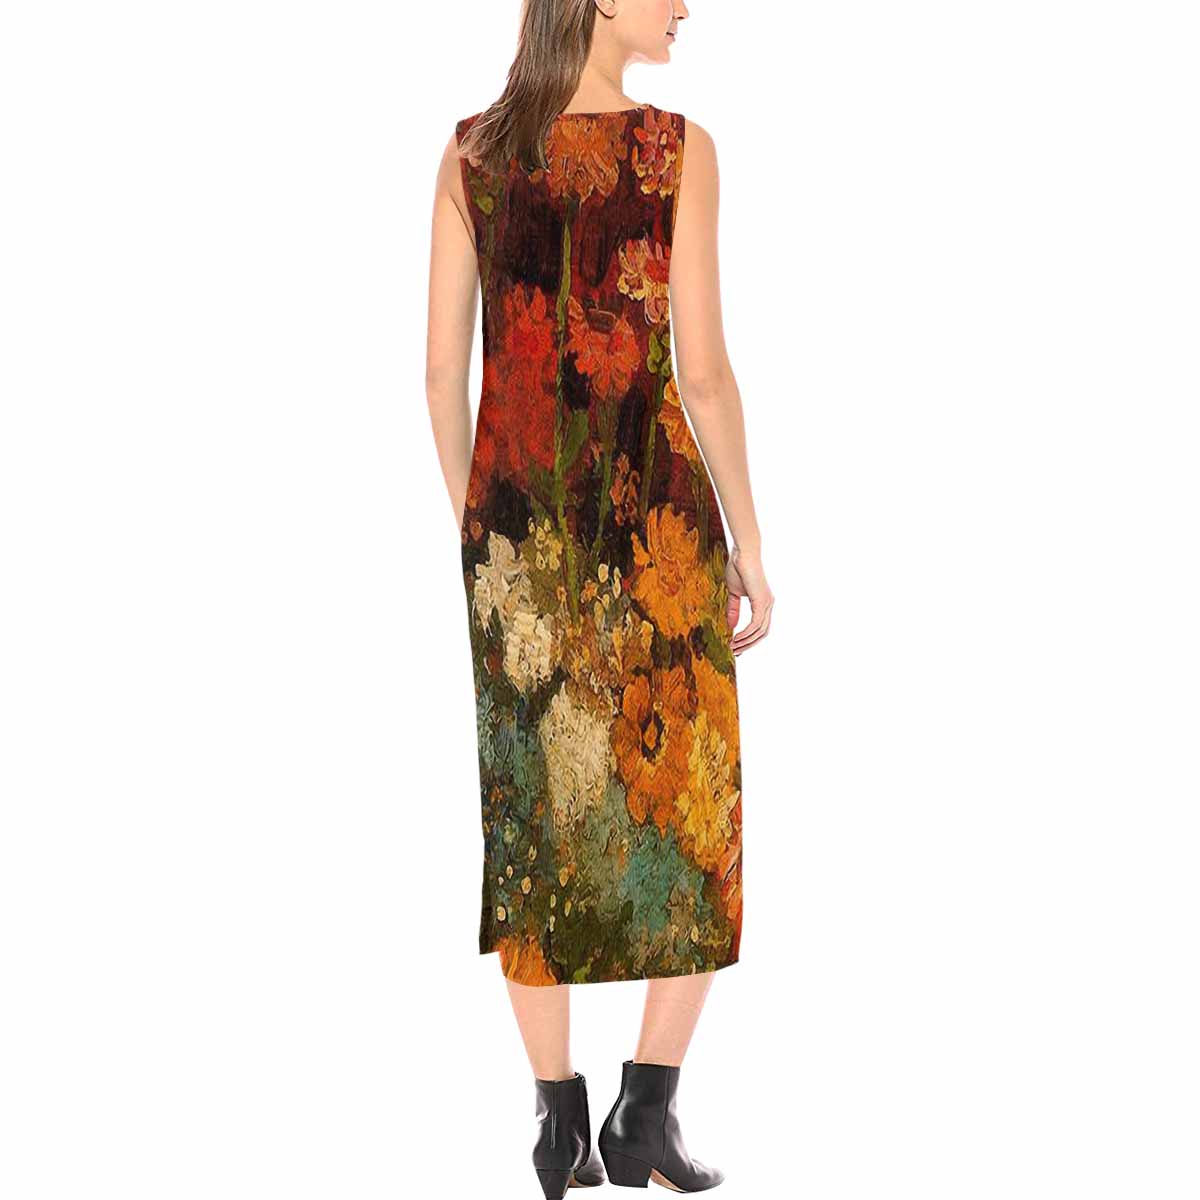 Vintage floral long dress, model D09538 Design 31